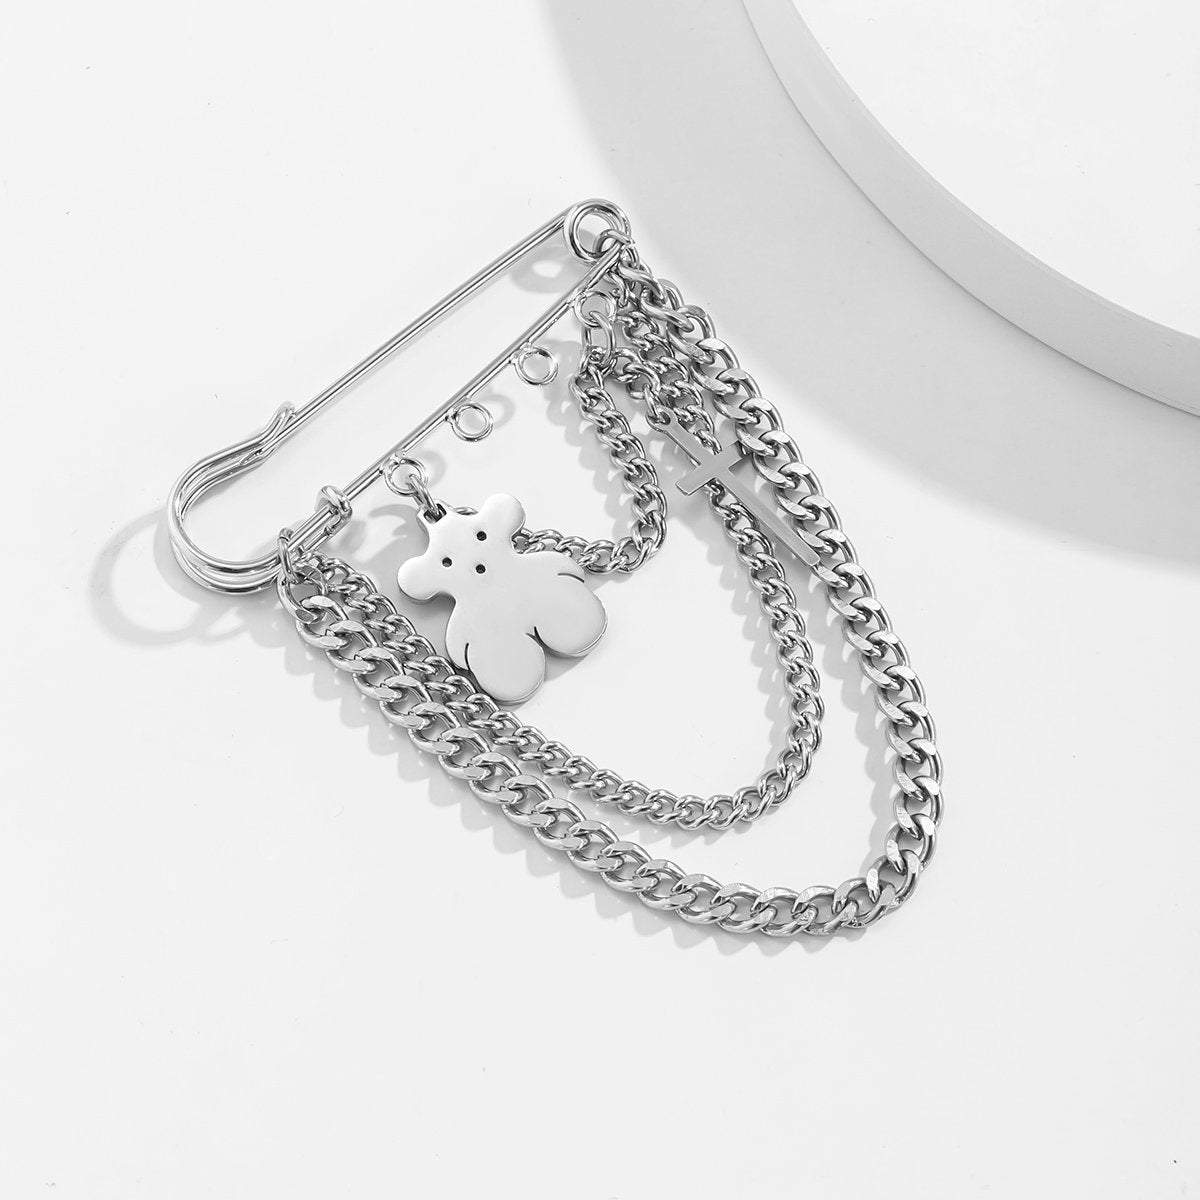 Stainless Steel Bear & Cross Pendant Curb Link Chain Pin Brooch - ArtGalleryZen